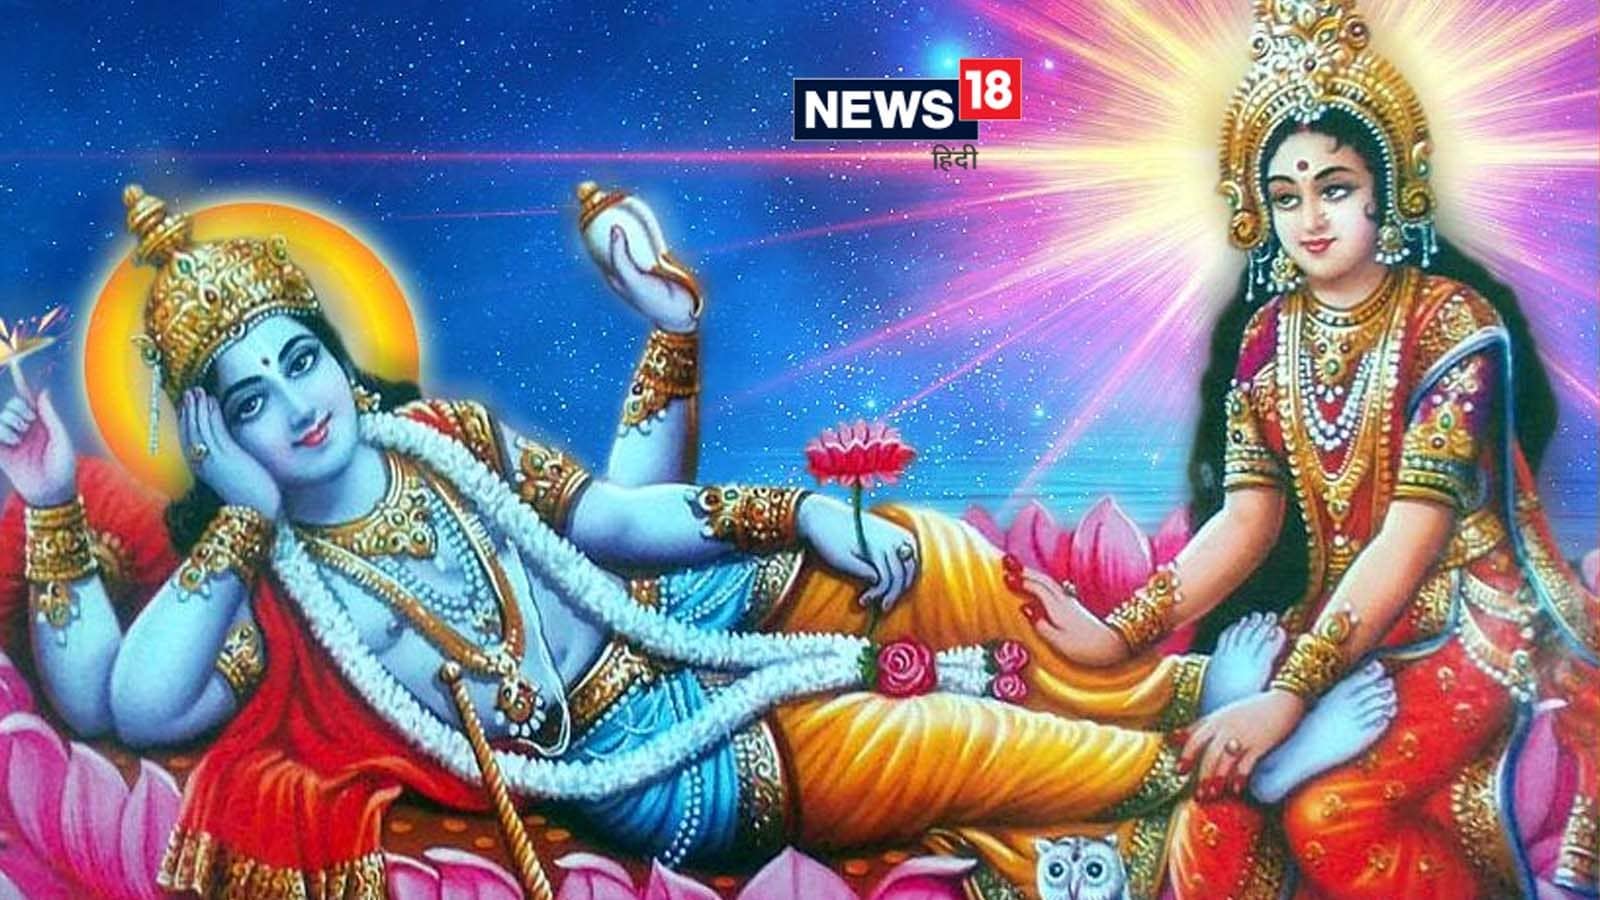 Should not use rice in worshiping Lord Vishnu, Madhvi and Lodh flowers  should not be offered | पुरुषोत्तम महीना: भगवान विष्णु की पूजा में नहीं  करना चाहिए चावल का इस्तेमाल, माधवी और